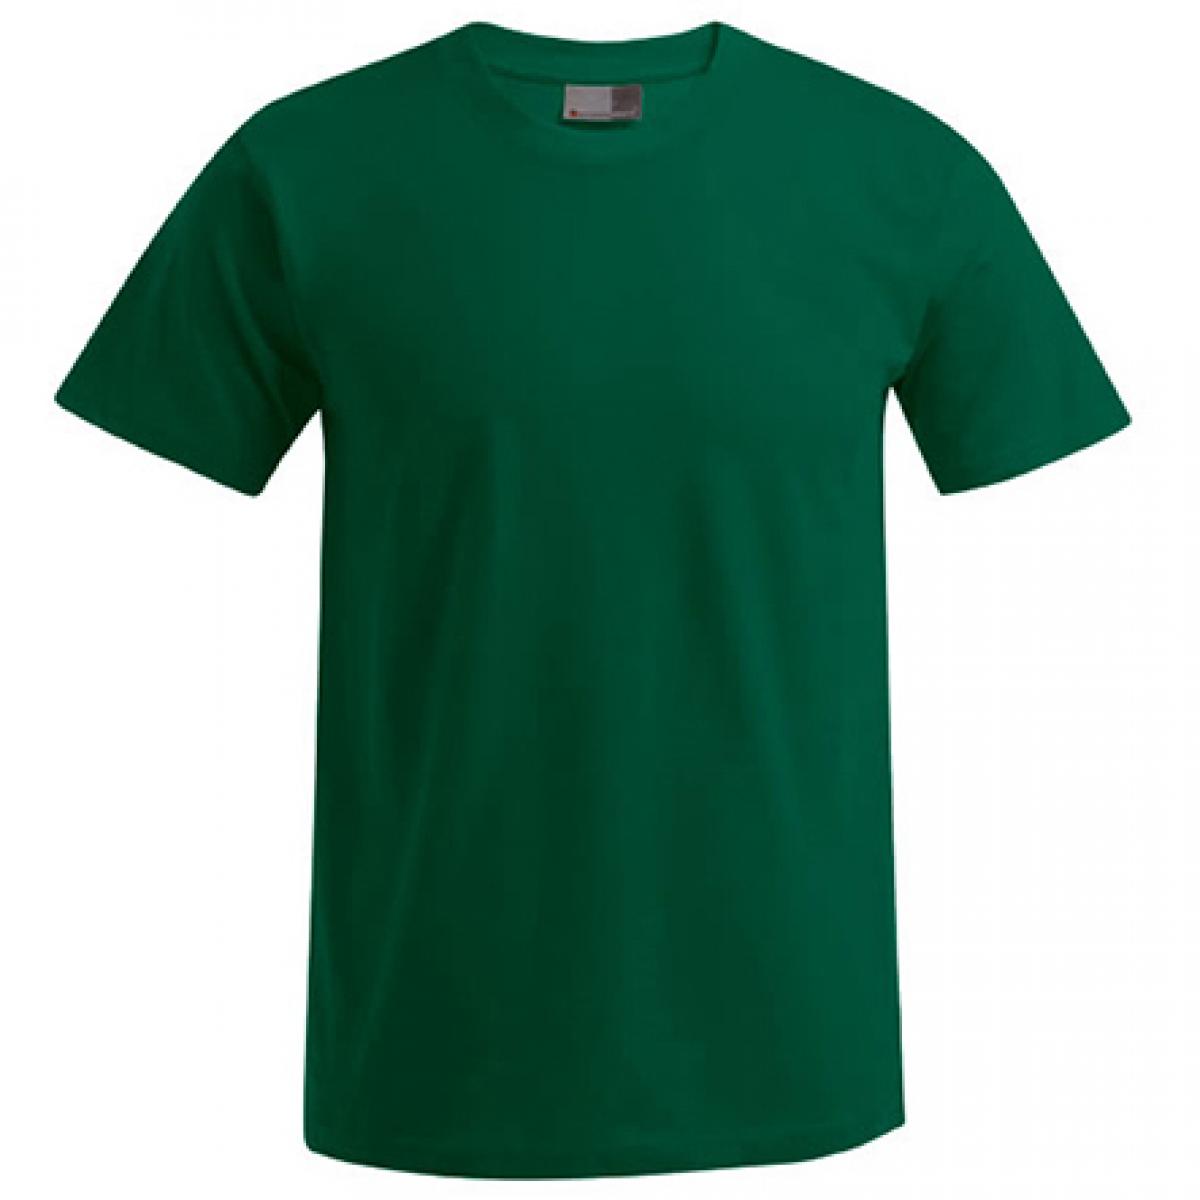 Hersteller: Promodoro Herstellernummer: 3000/3099 Artikelbezeichnung: Men´s Premium Herren T-Shirt - bis 5XL Farbe: Forest